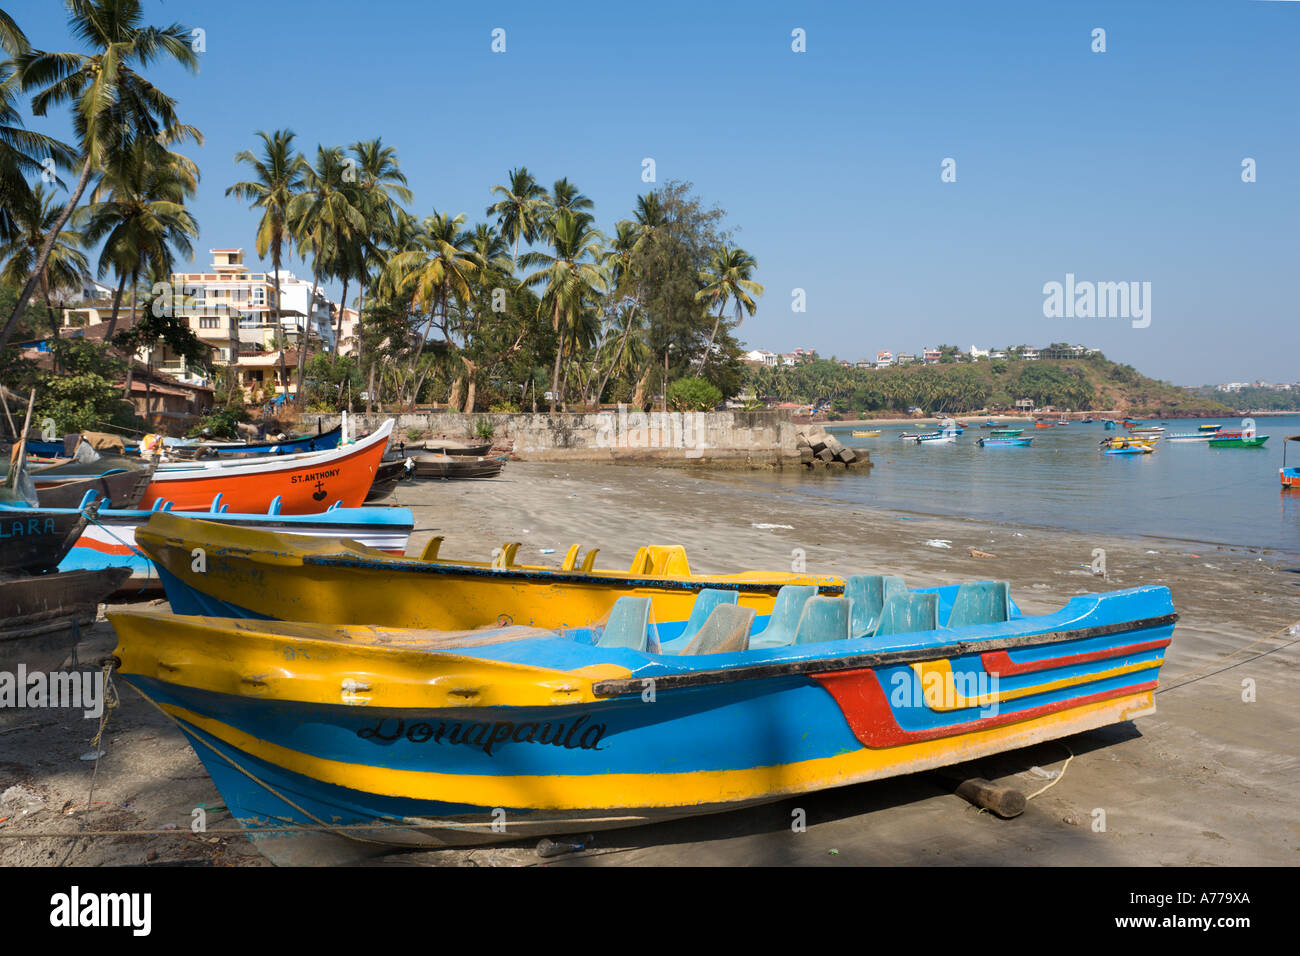 Local fishing boats on the beach at Dona Paula, Central Goa, Goa, India Stock Photo